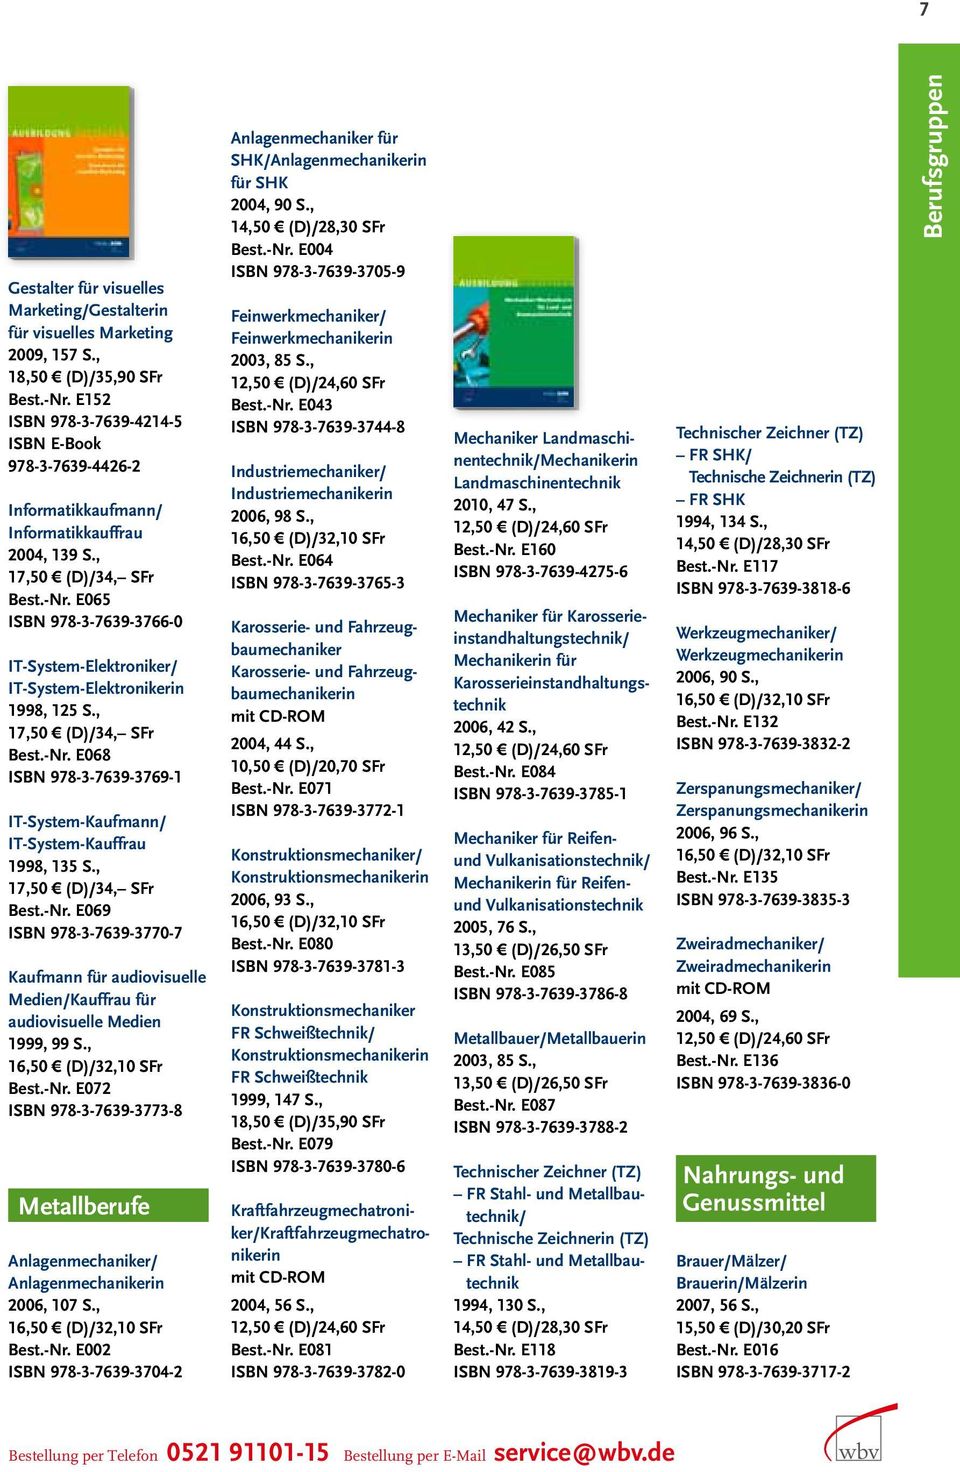 , Best.-Nr. E072 ISBN 978-3-7639-3773-8 Metallberufe Anlagenmechaniker/ Anlagenmechanikerin 2006, 107 S., Best.-Nr. E002 ISBN 978-3-7639-3704-2 Anlagenmechaniker für SHK/Anlagenmechanikerin für SHK 2004, 90 S.